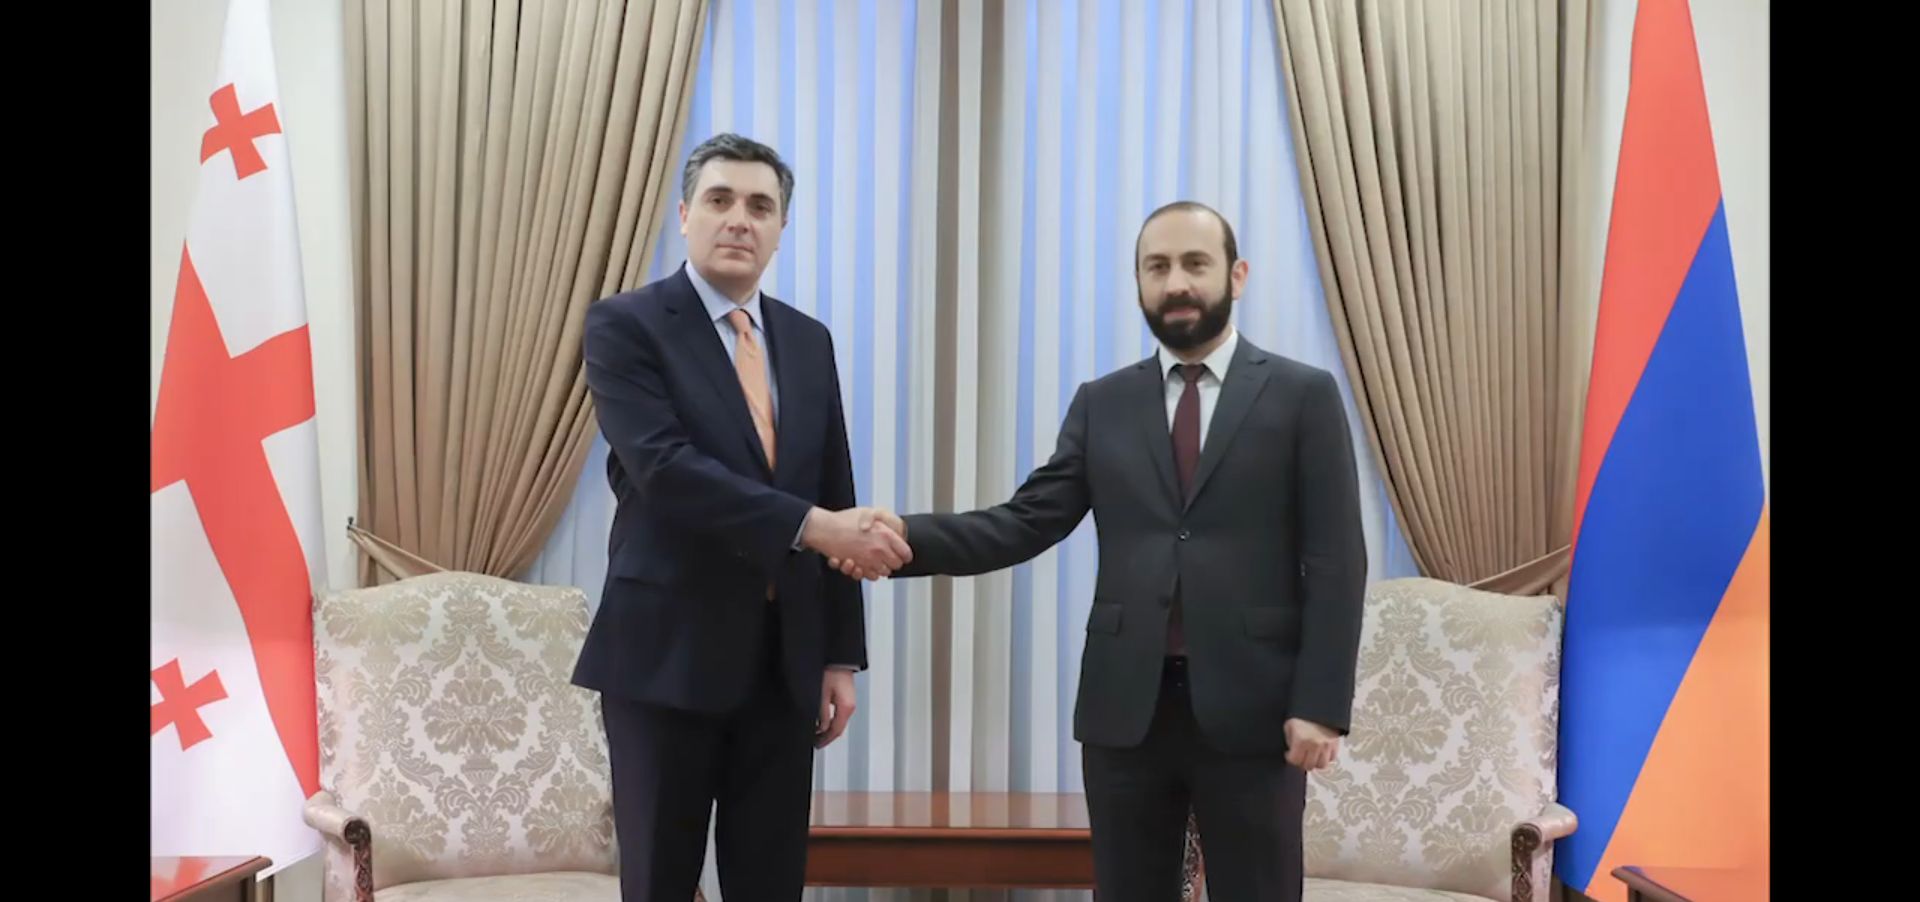 3 июля министр иностранных дел Армении Арарат Мирзоян будет находиться в Тбилиси с официальным визитом